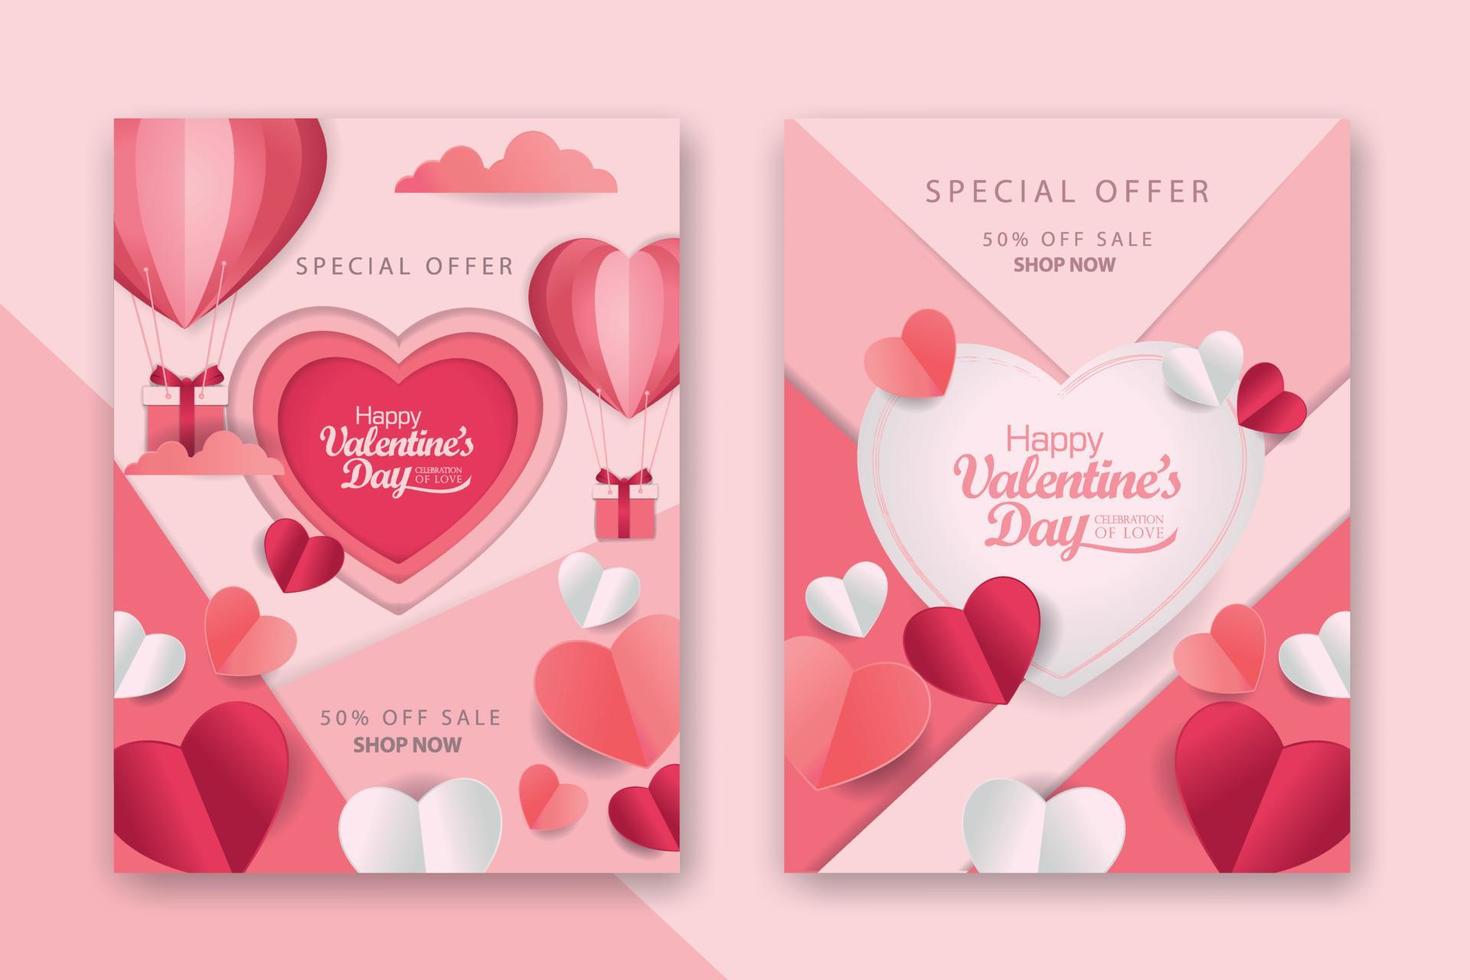 poster concettuali di san valentino con cuori di carta 3d rossi e rosa e cornice su sfondo geometrico. simpatici striscioni o biglietti di auguri per la vendita di amore vettore